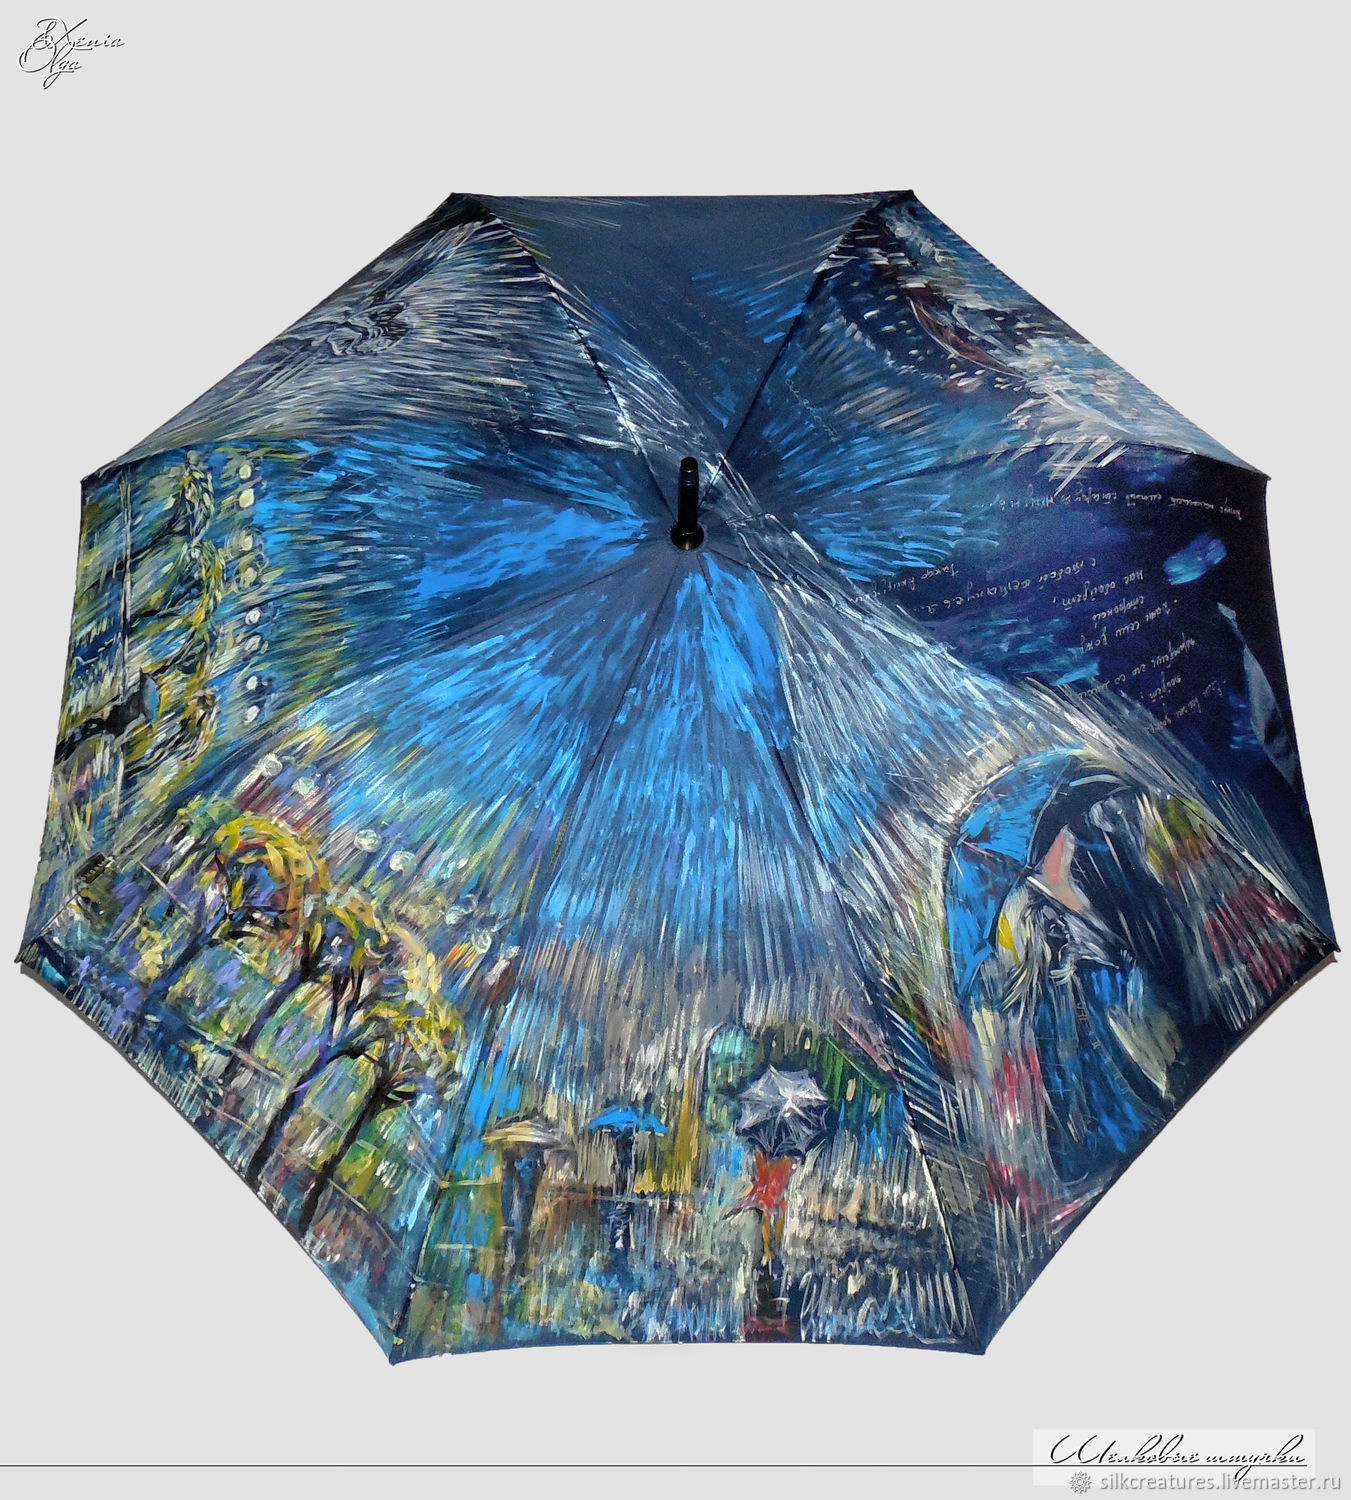 Купить зонтик на озоне. Женский зонт. Зонт расписной. Разрисованные зонты. Зонт с принтом.